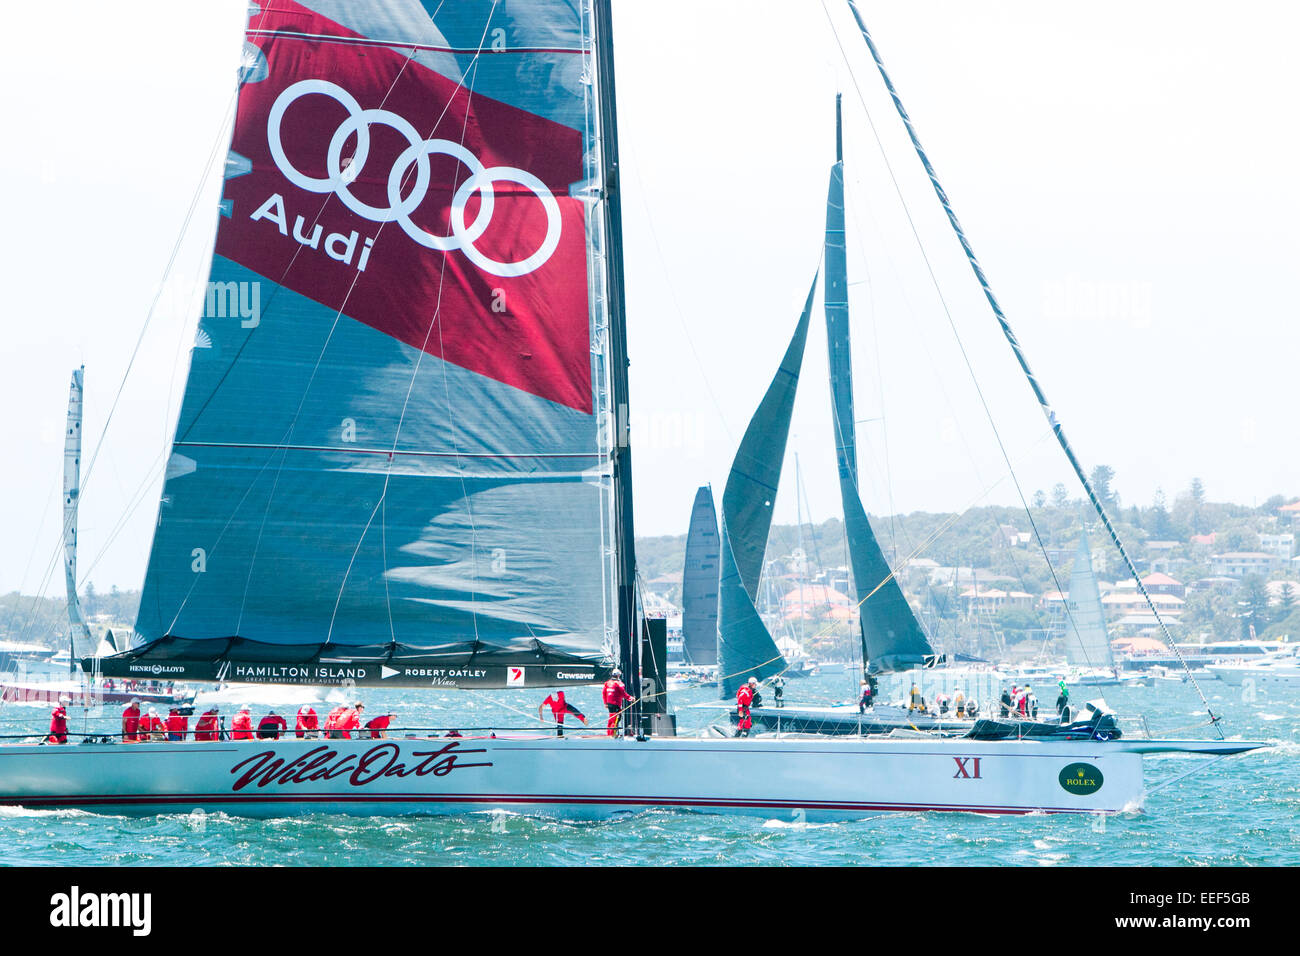 L'avoine sauvage x1 au début de la 2014 rolex sydney to hobart yacht race le lendemain de Noël 2014, le port de Sydney, Australie Banque D'Images